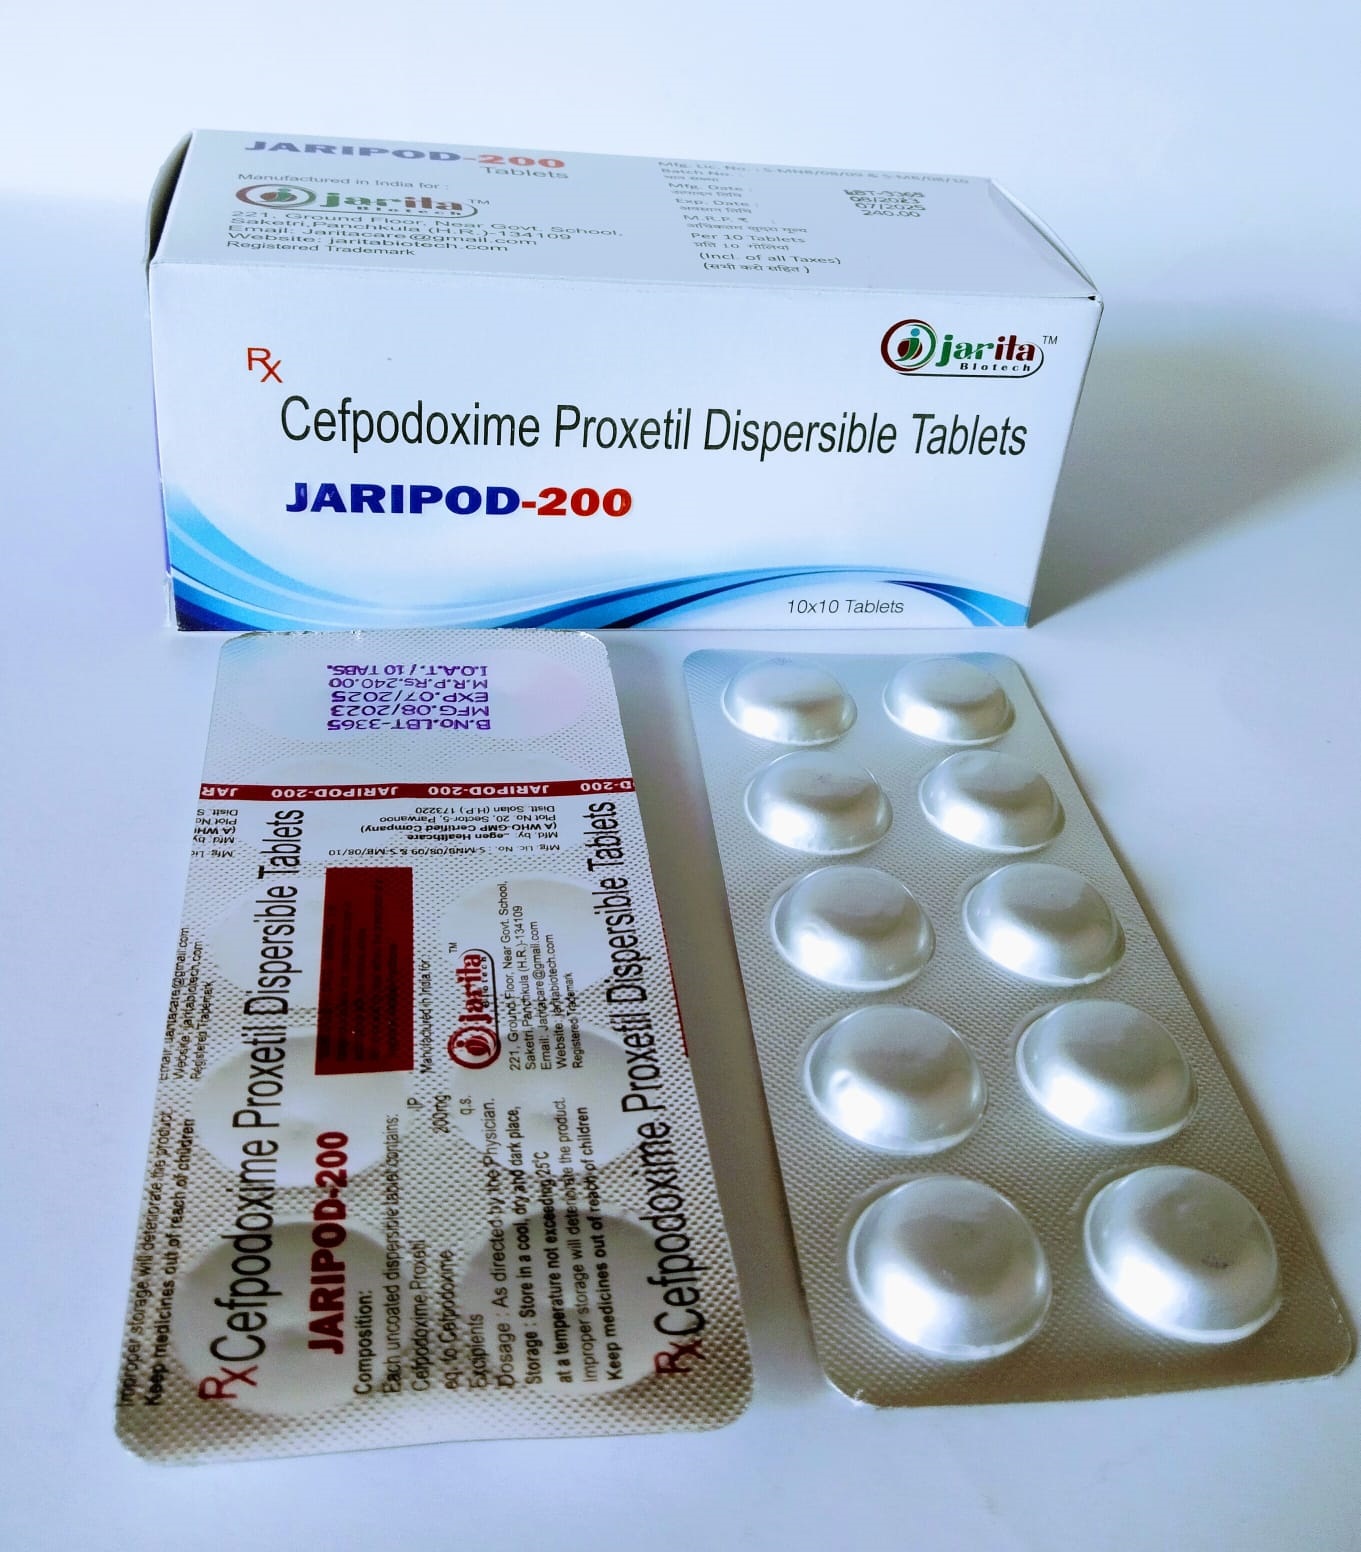 Jaripod-200 Tablets